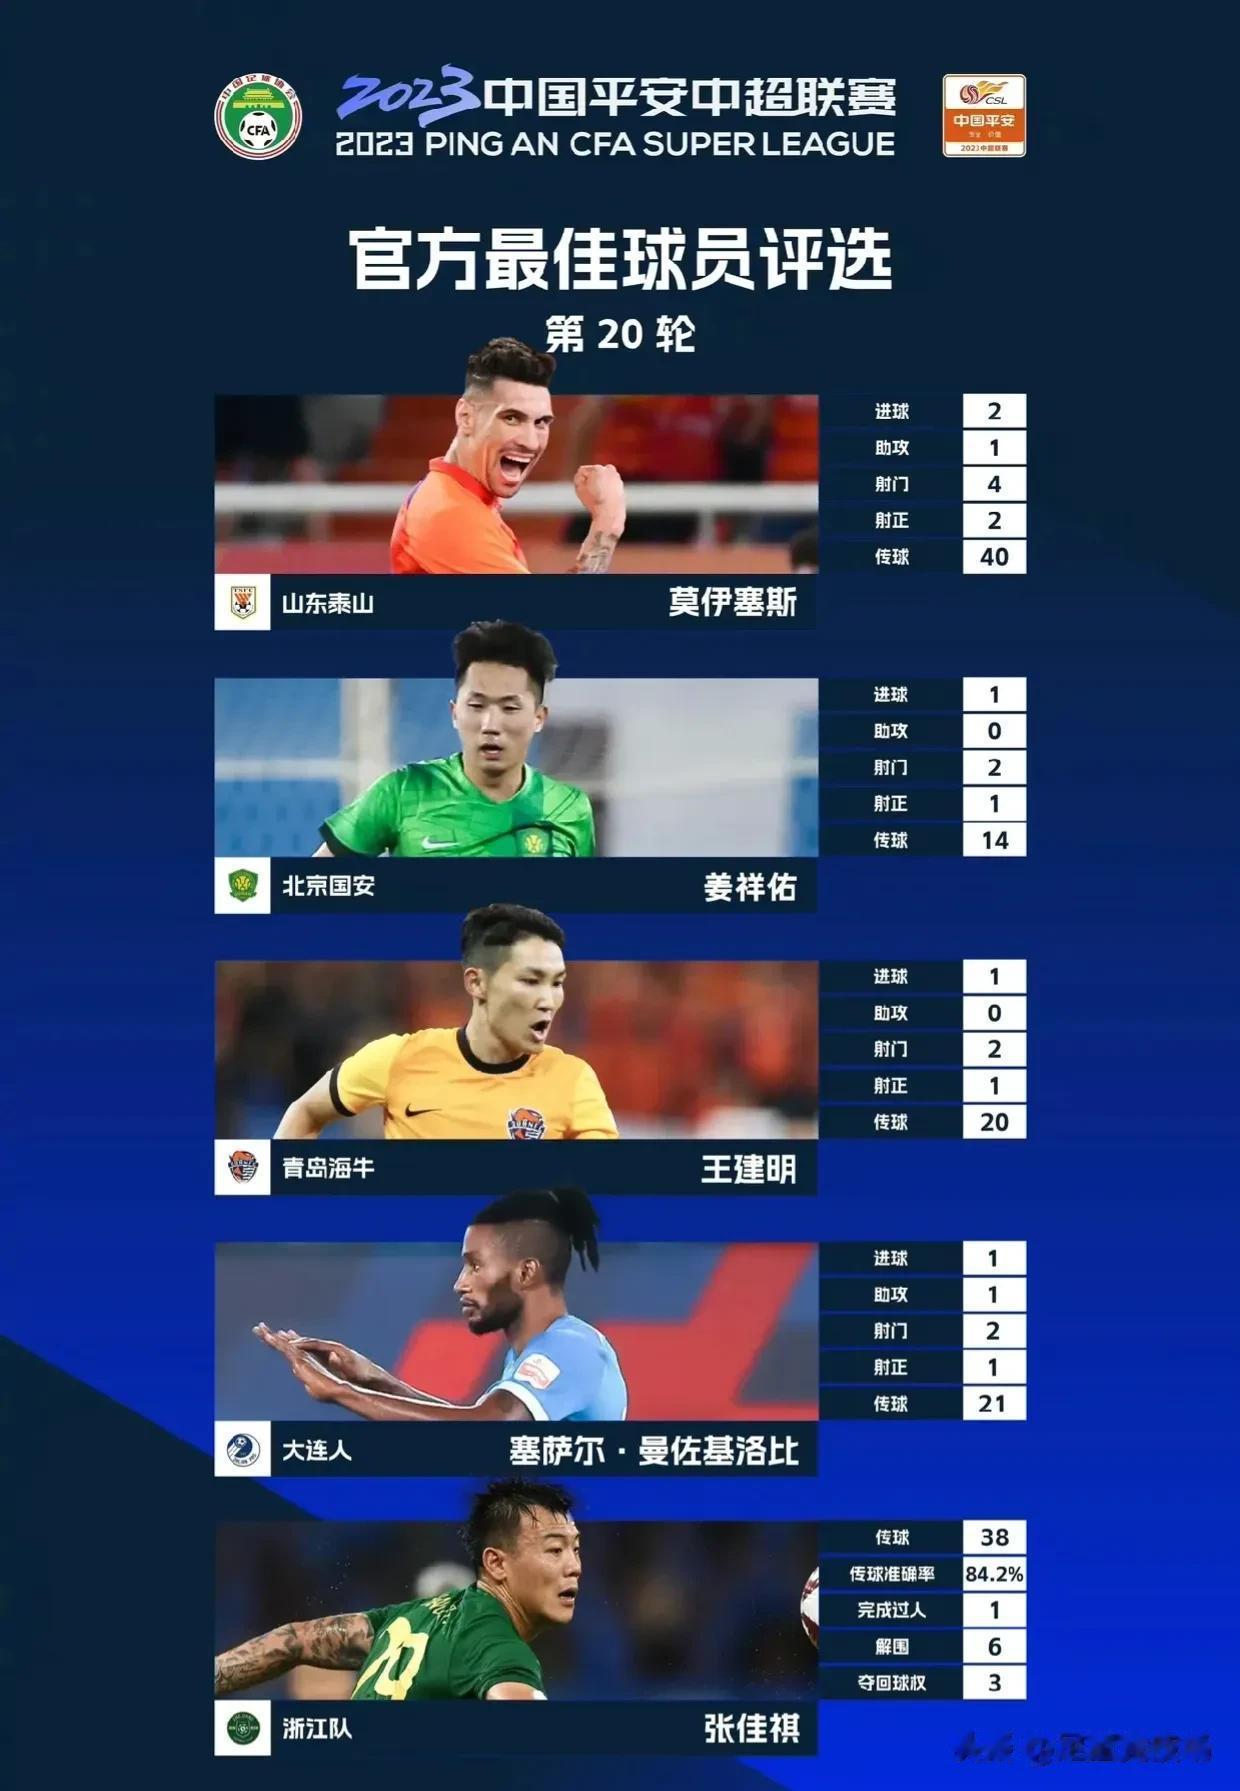 2023中国平安中超联赛第20轮官方最佳球员评选
入围本轮评选的五位球员是：
山